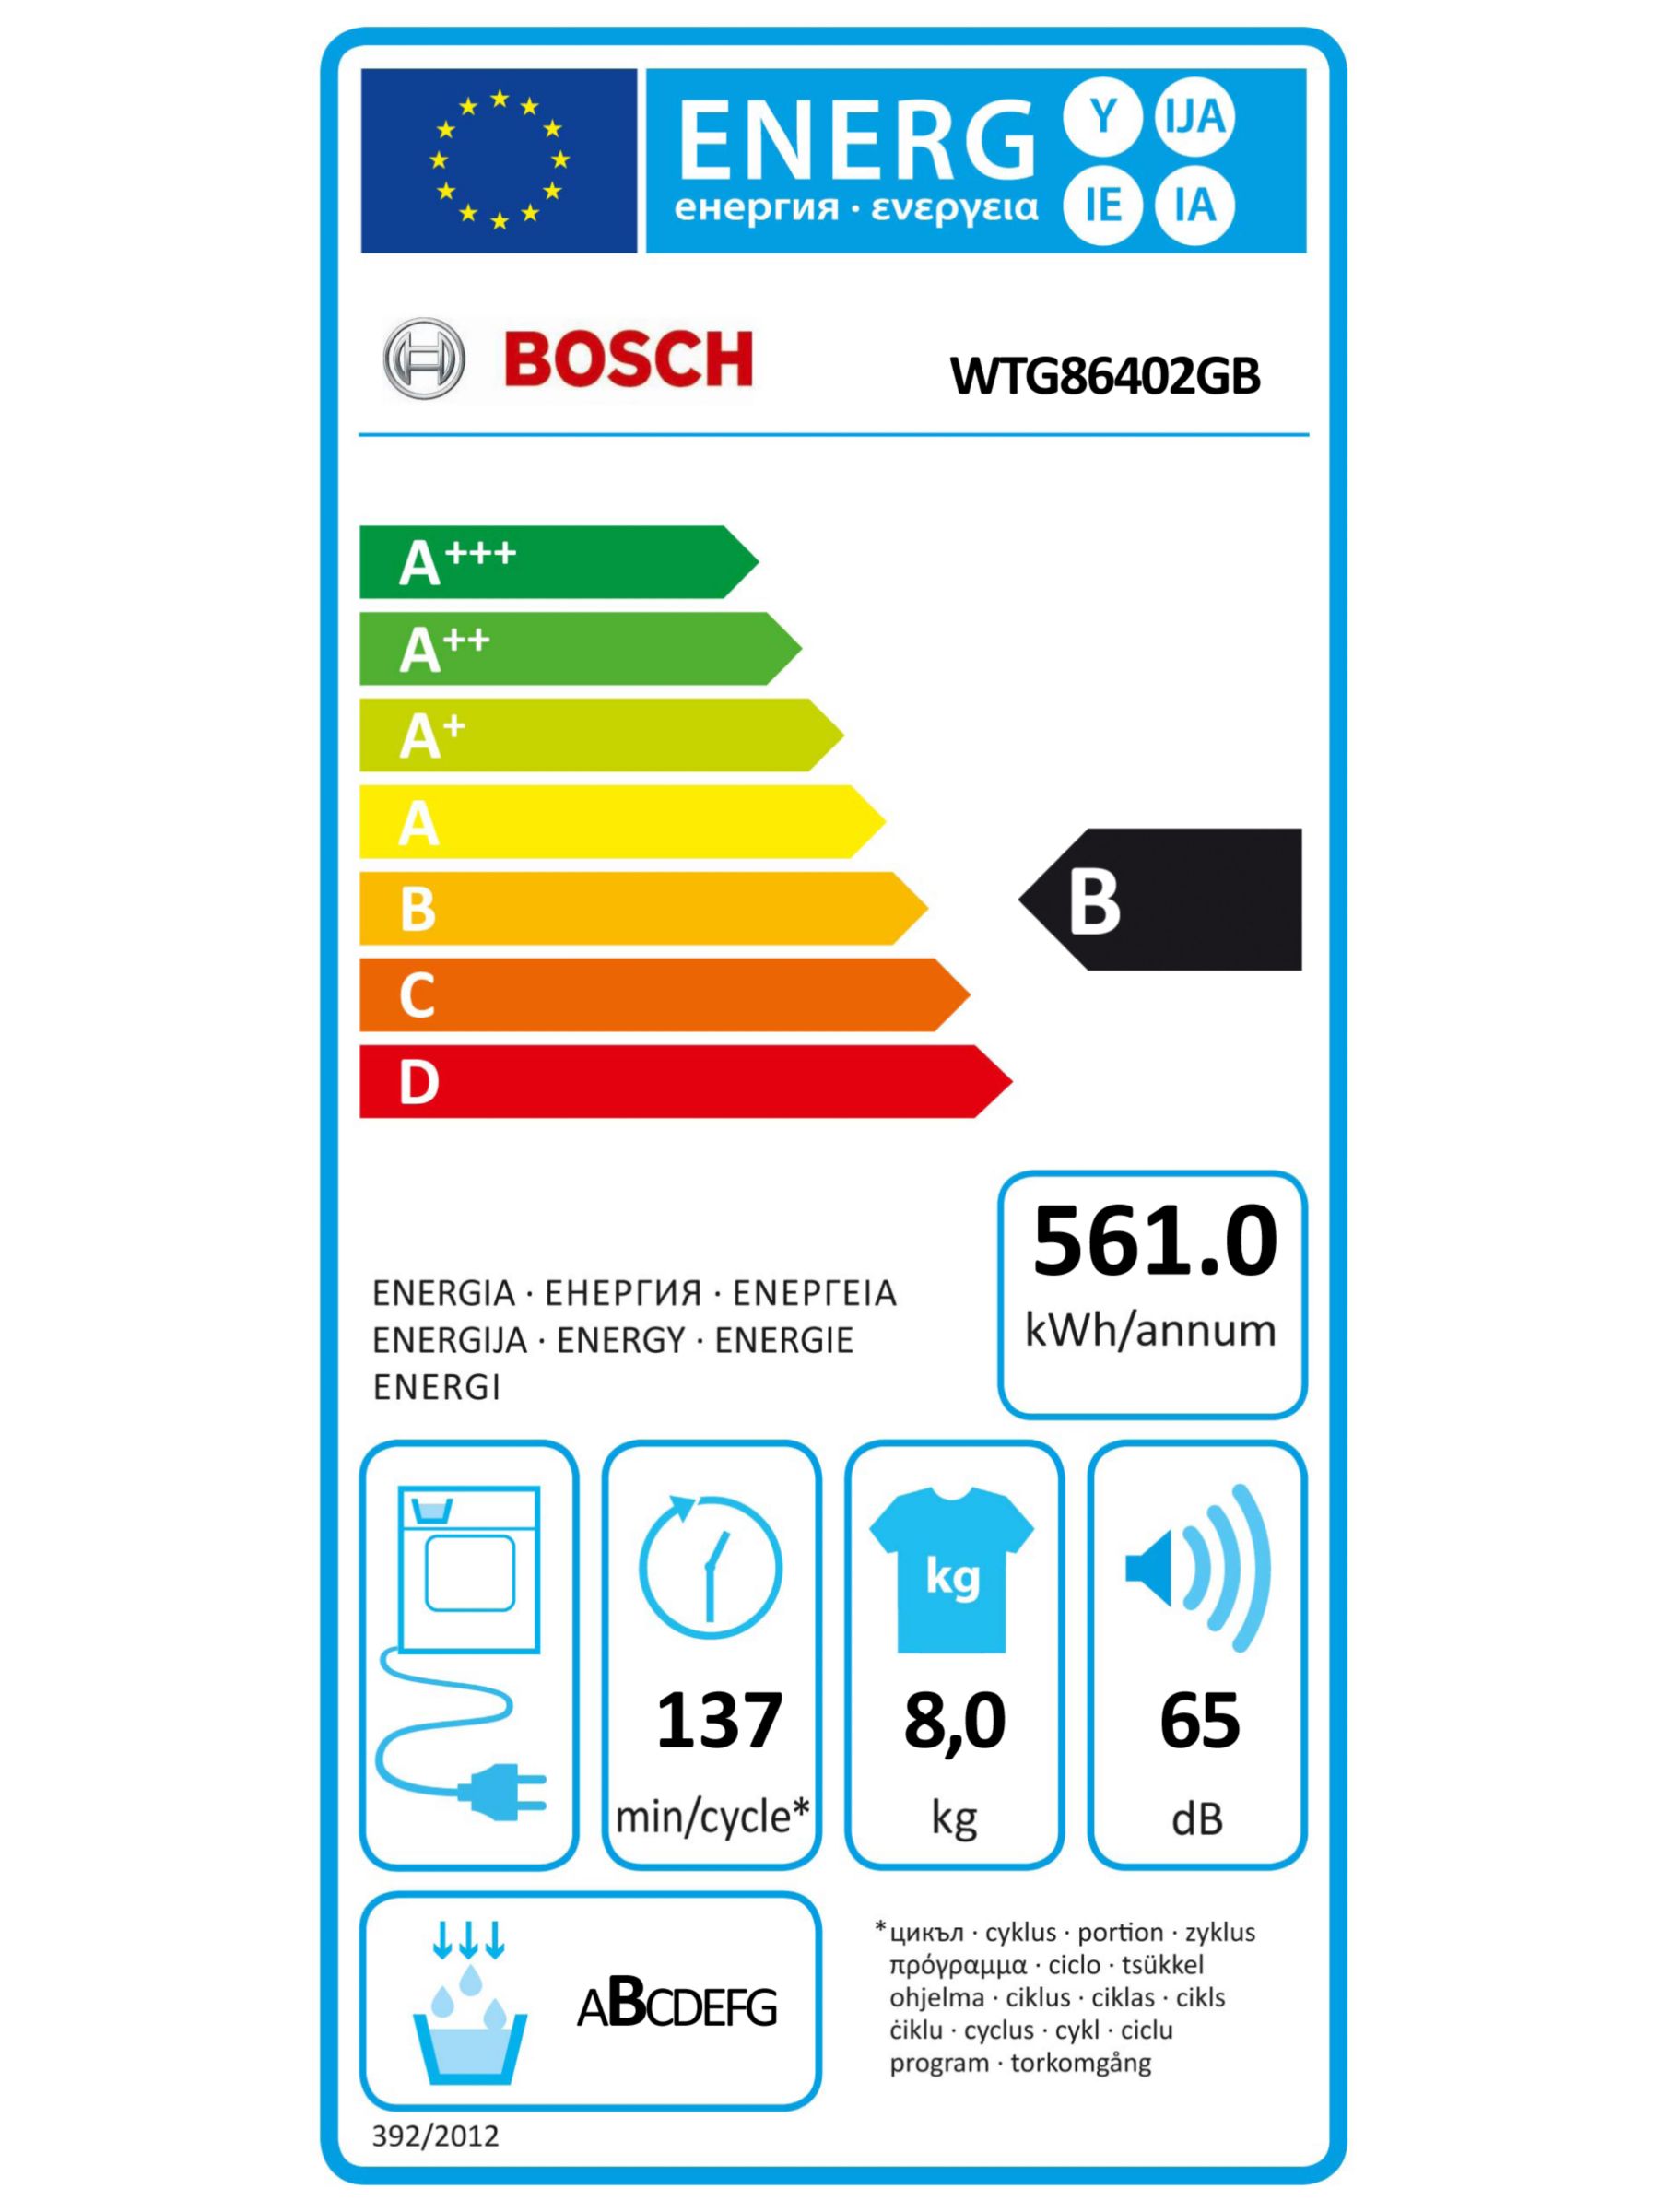 Bosch WTG86402GB Sensor Condenser Tumble Dryer, B Rating, White